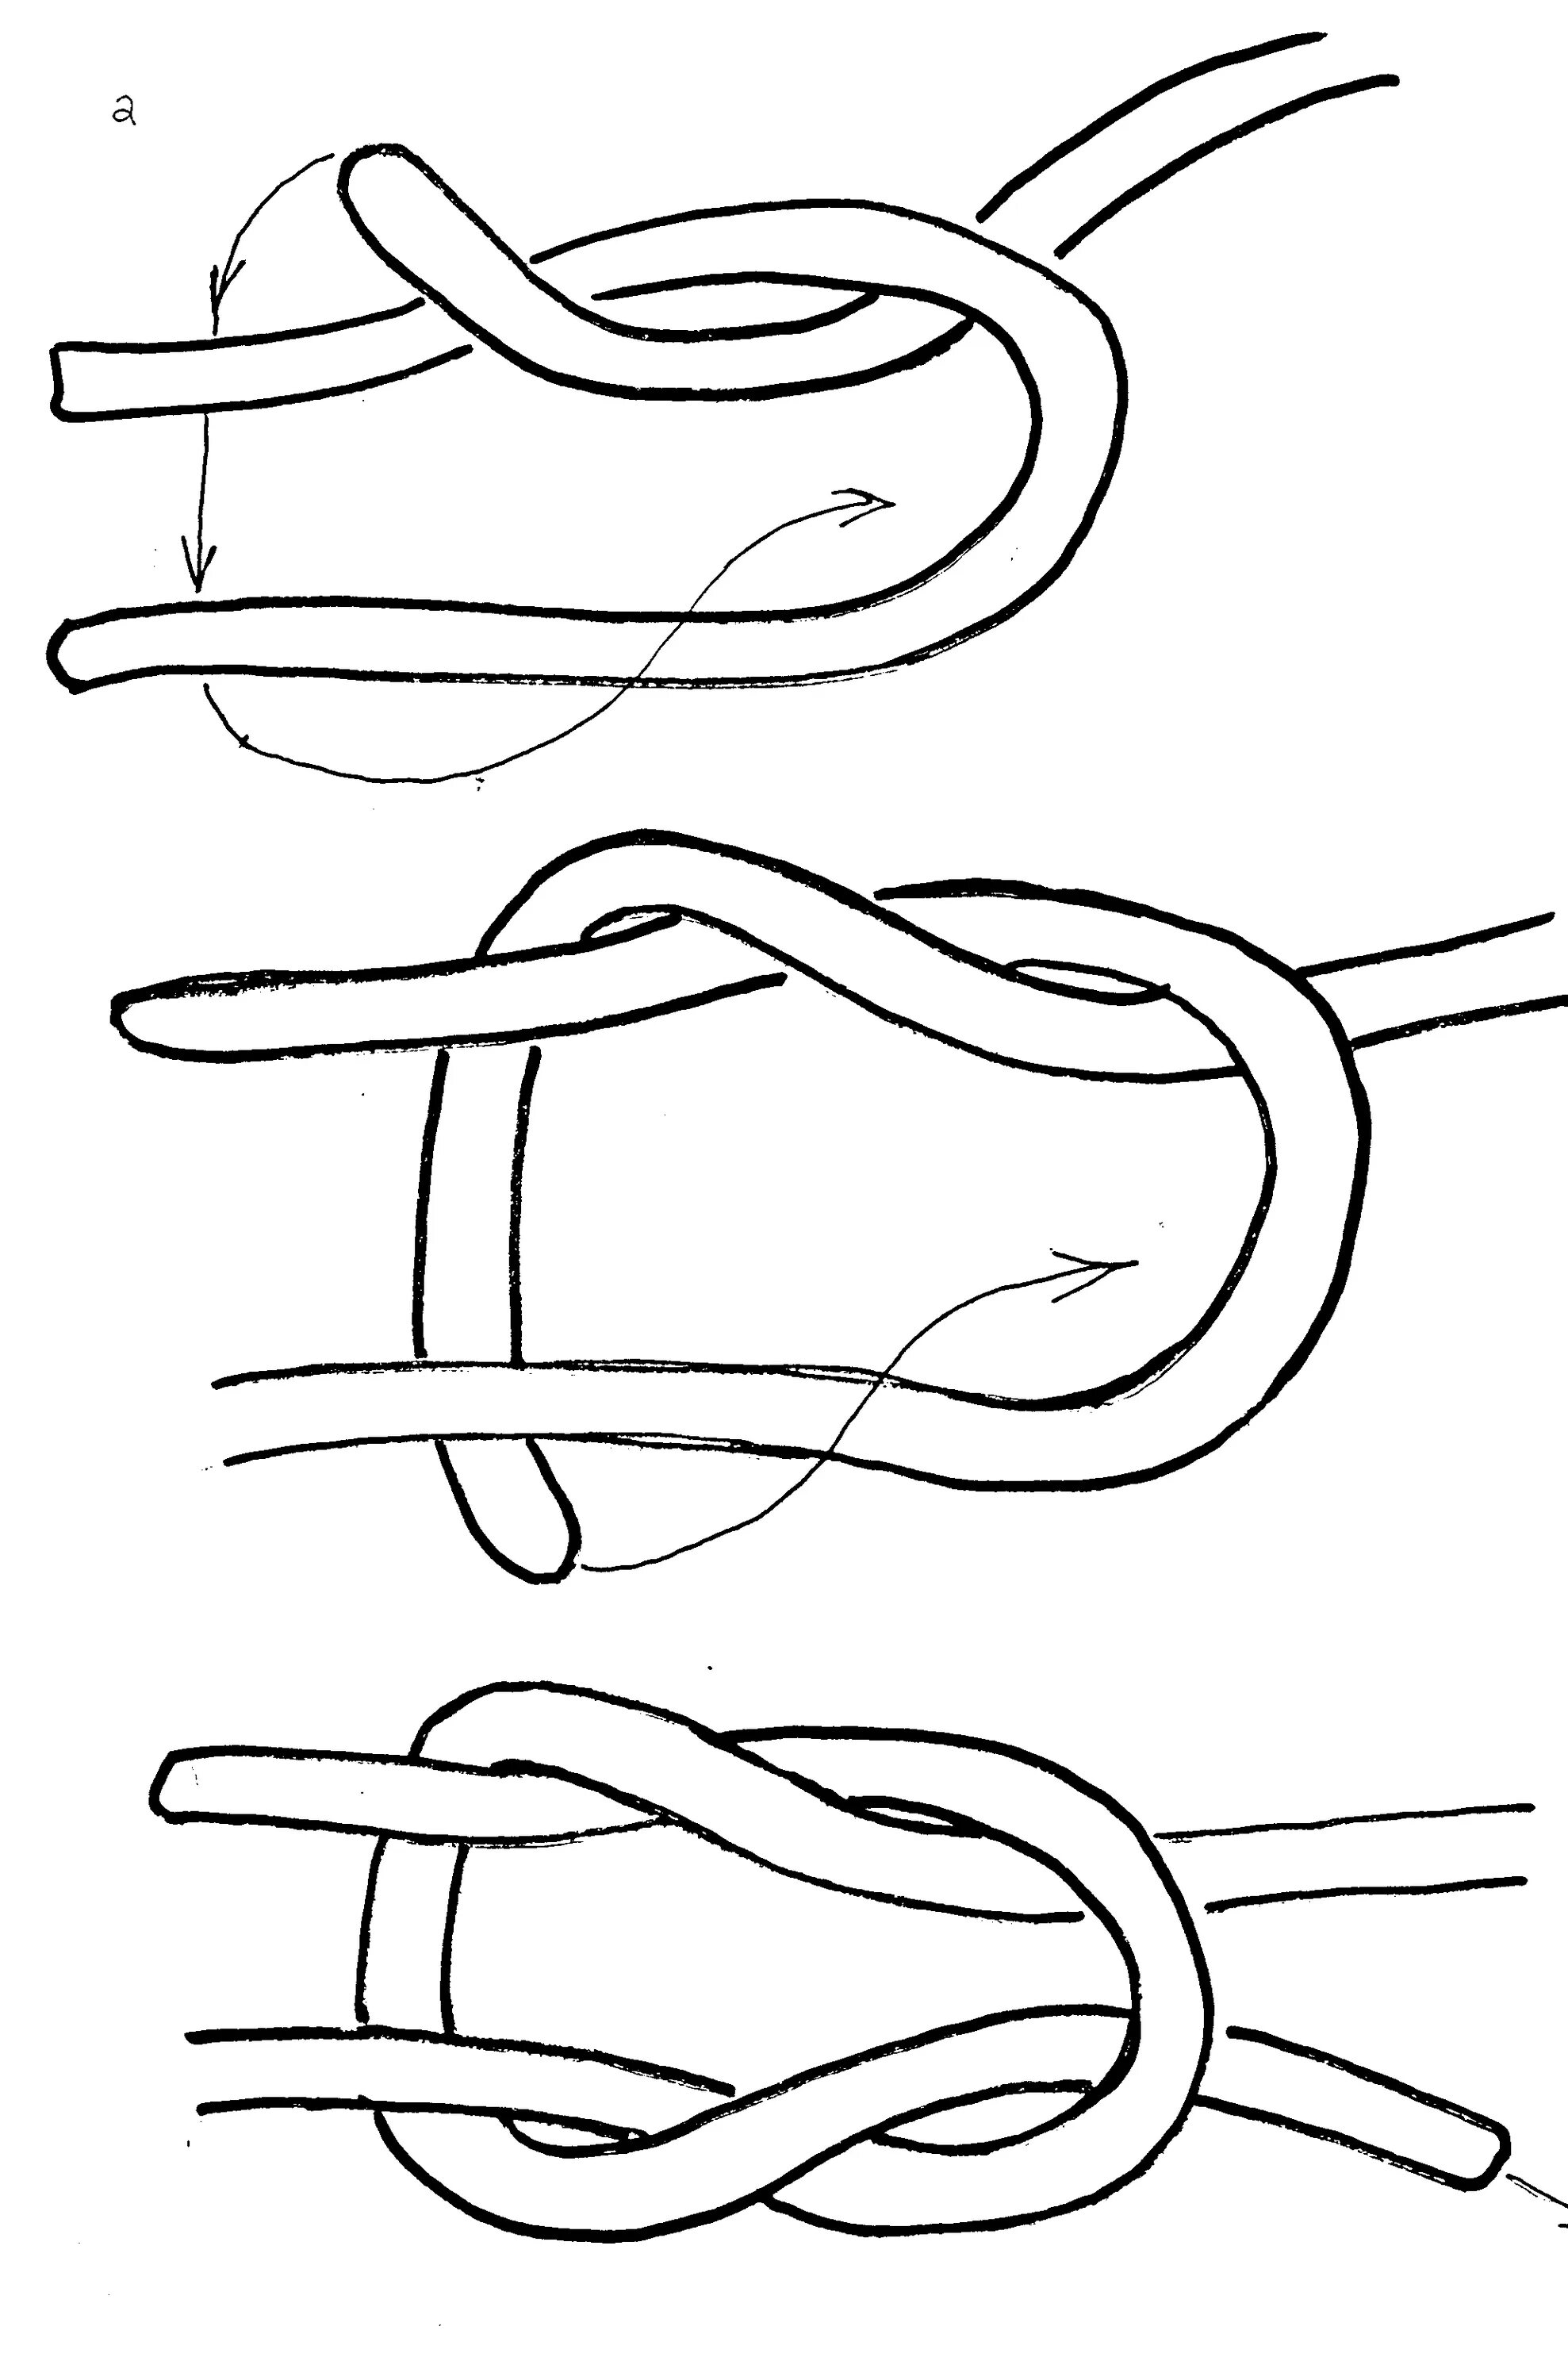 Схема завязывания морского узла. Фламандский узел схема. Как завязывать морской узел схема. Узел восьмерка швартовка. Завязка узлов